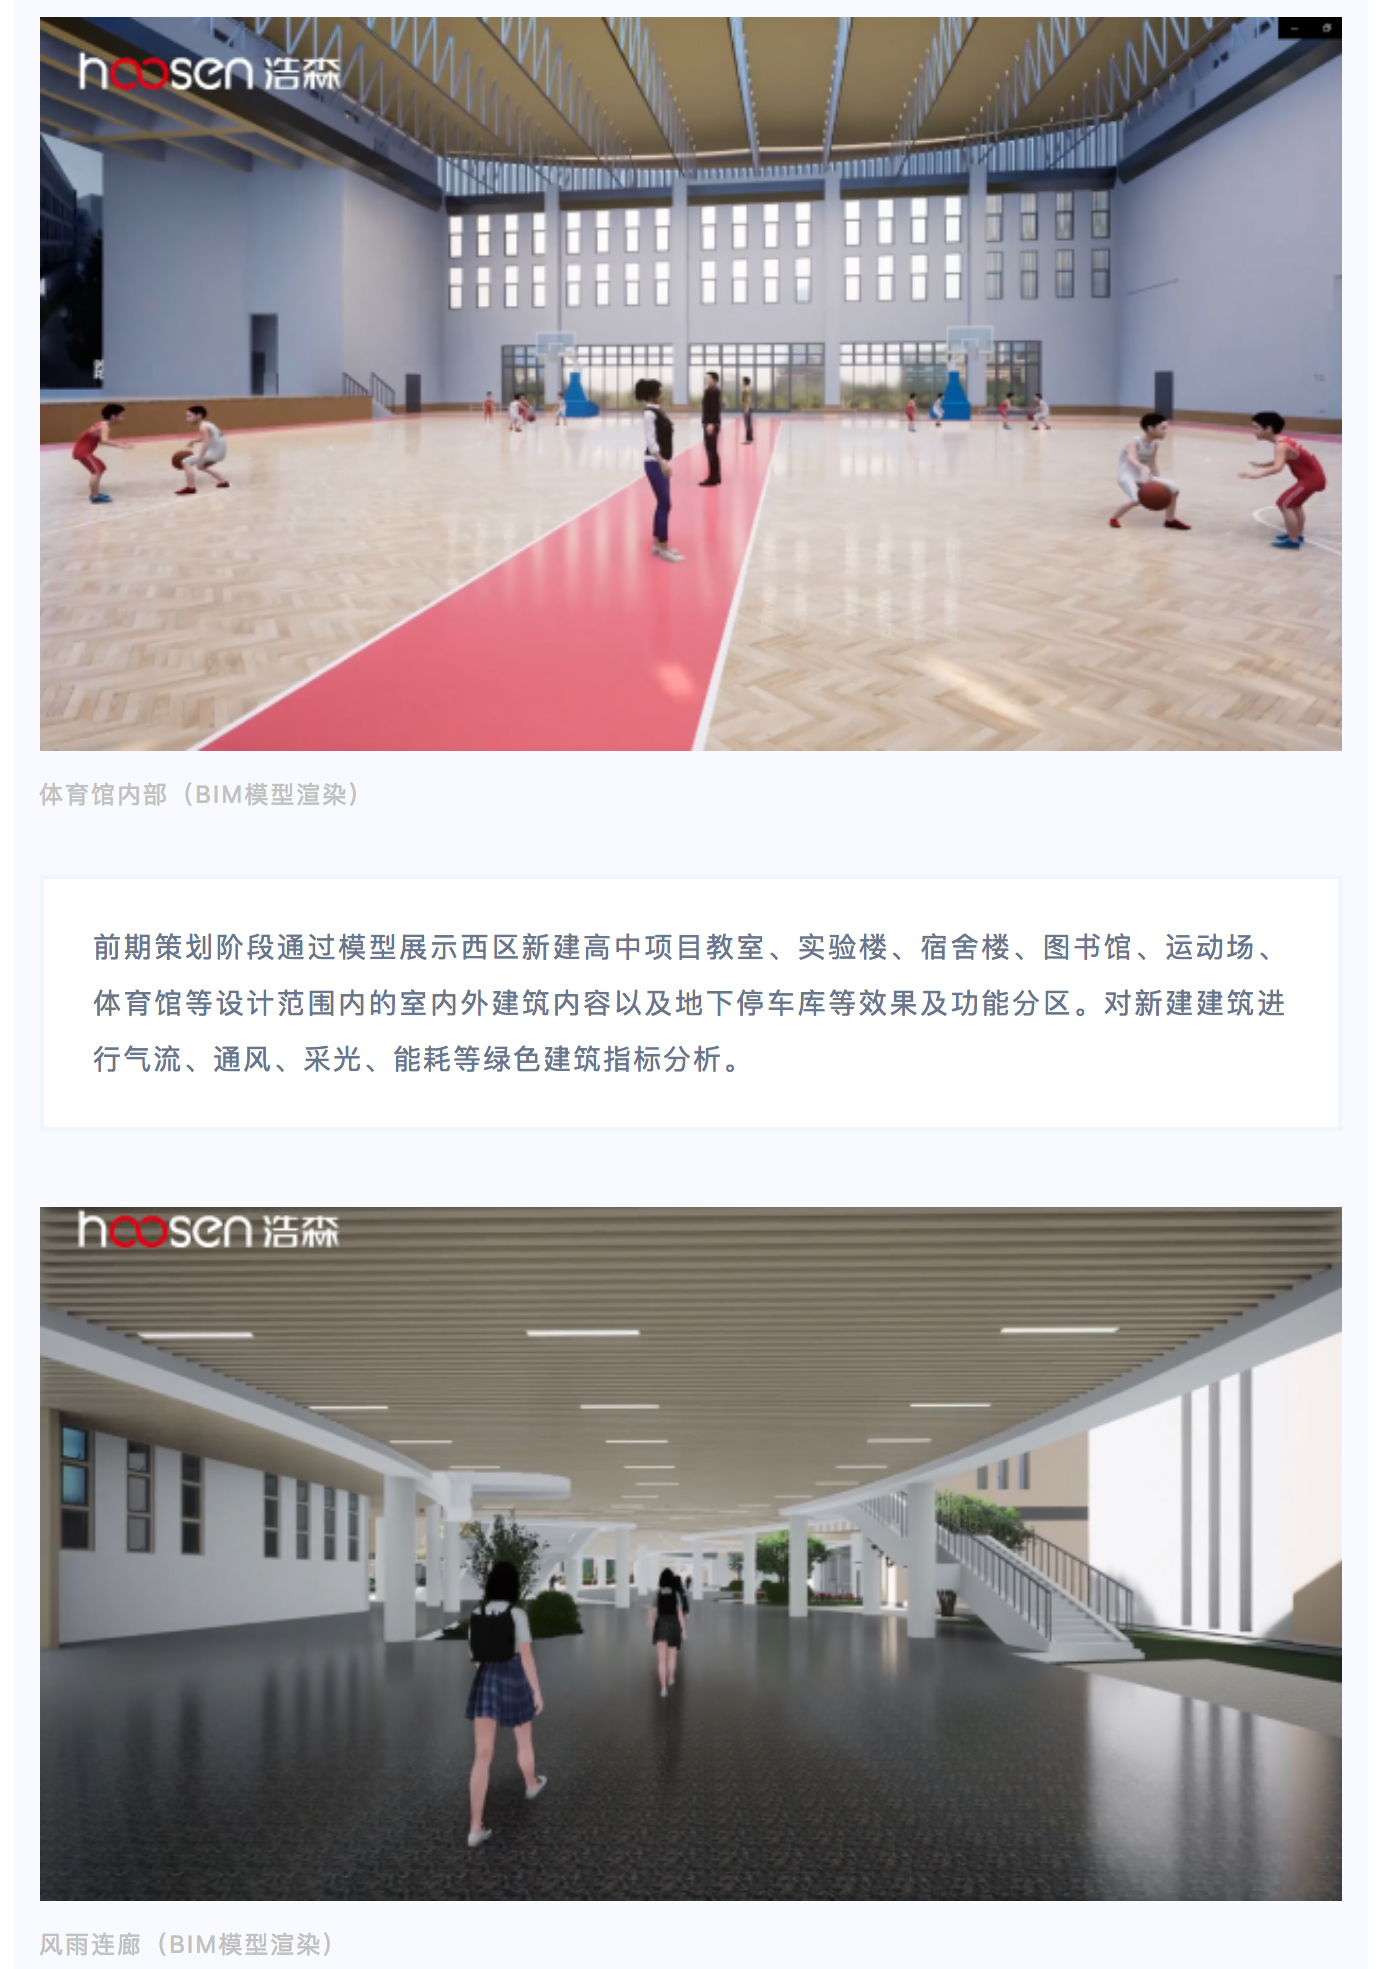 中山市西区新建高中学校BIM全过程项目_0003_图层-4.jpg